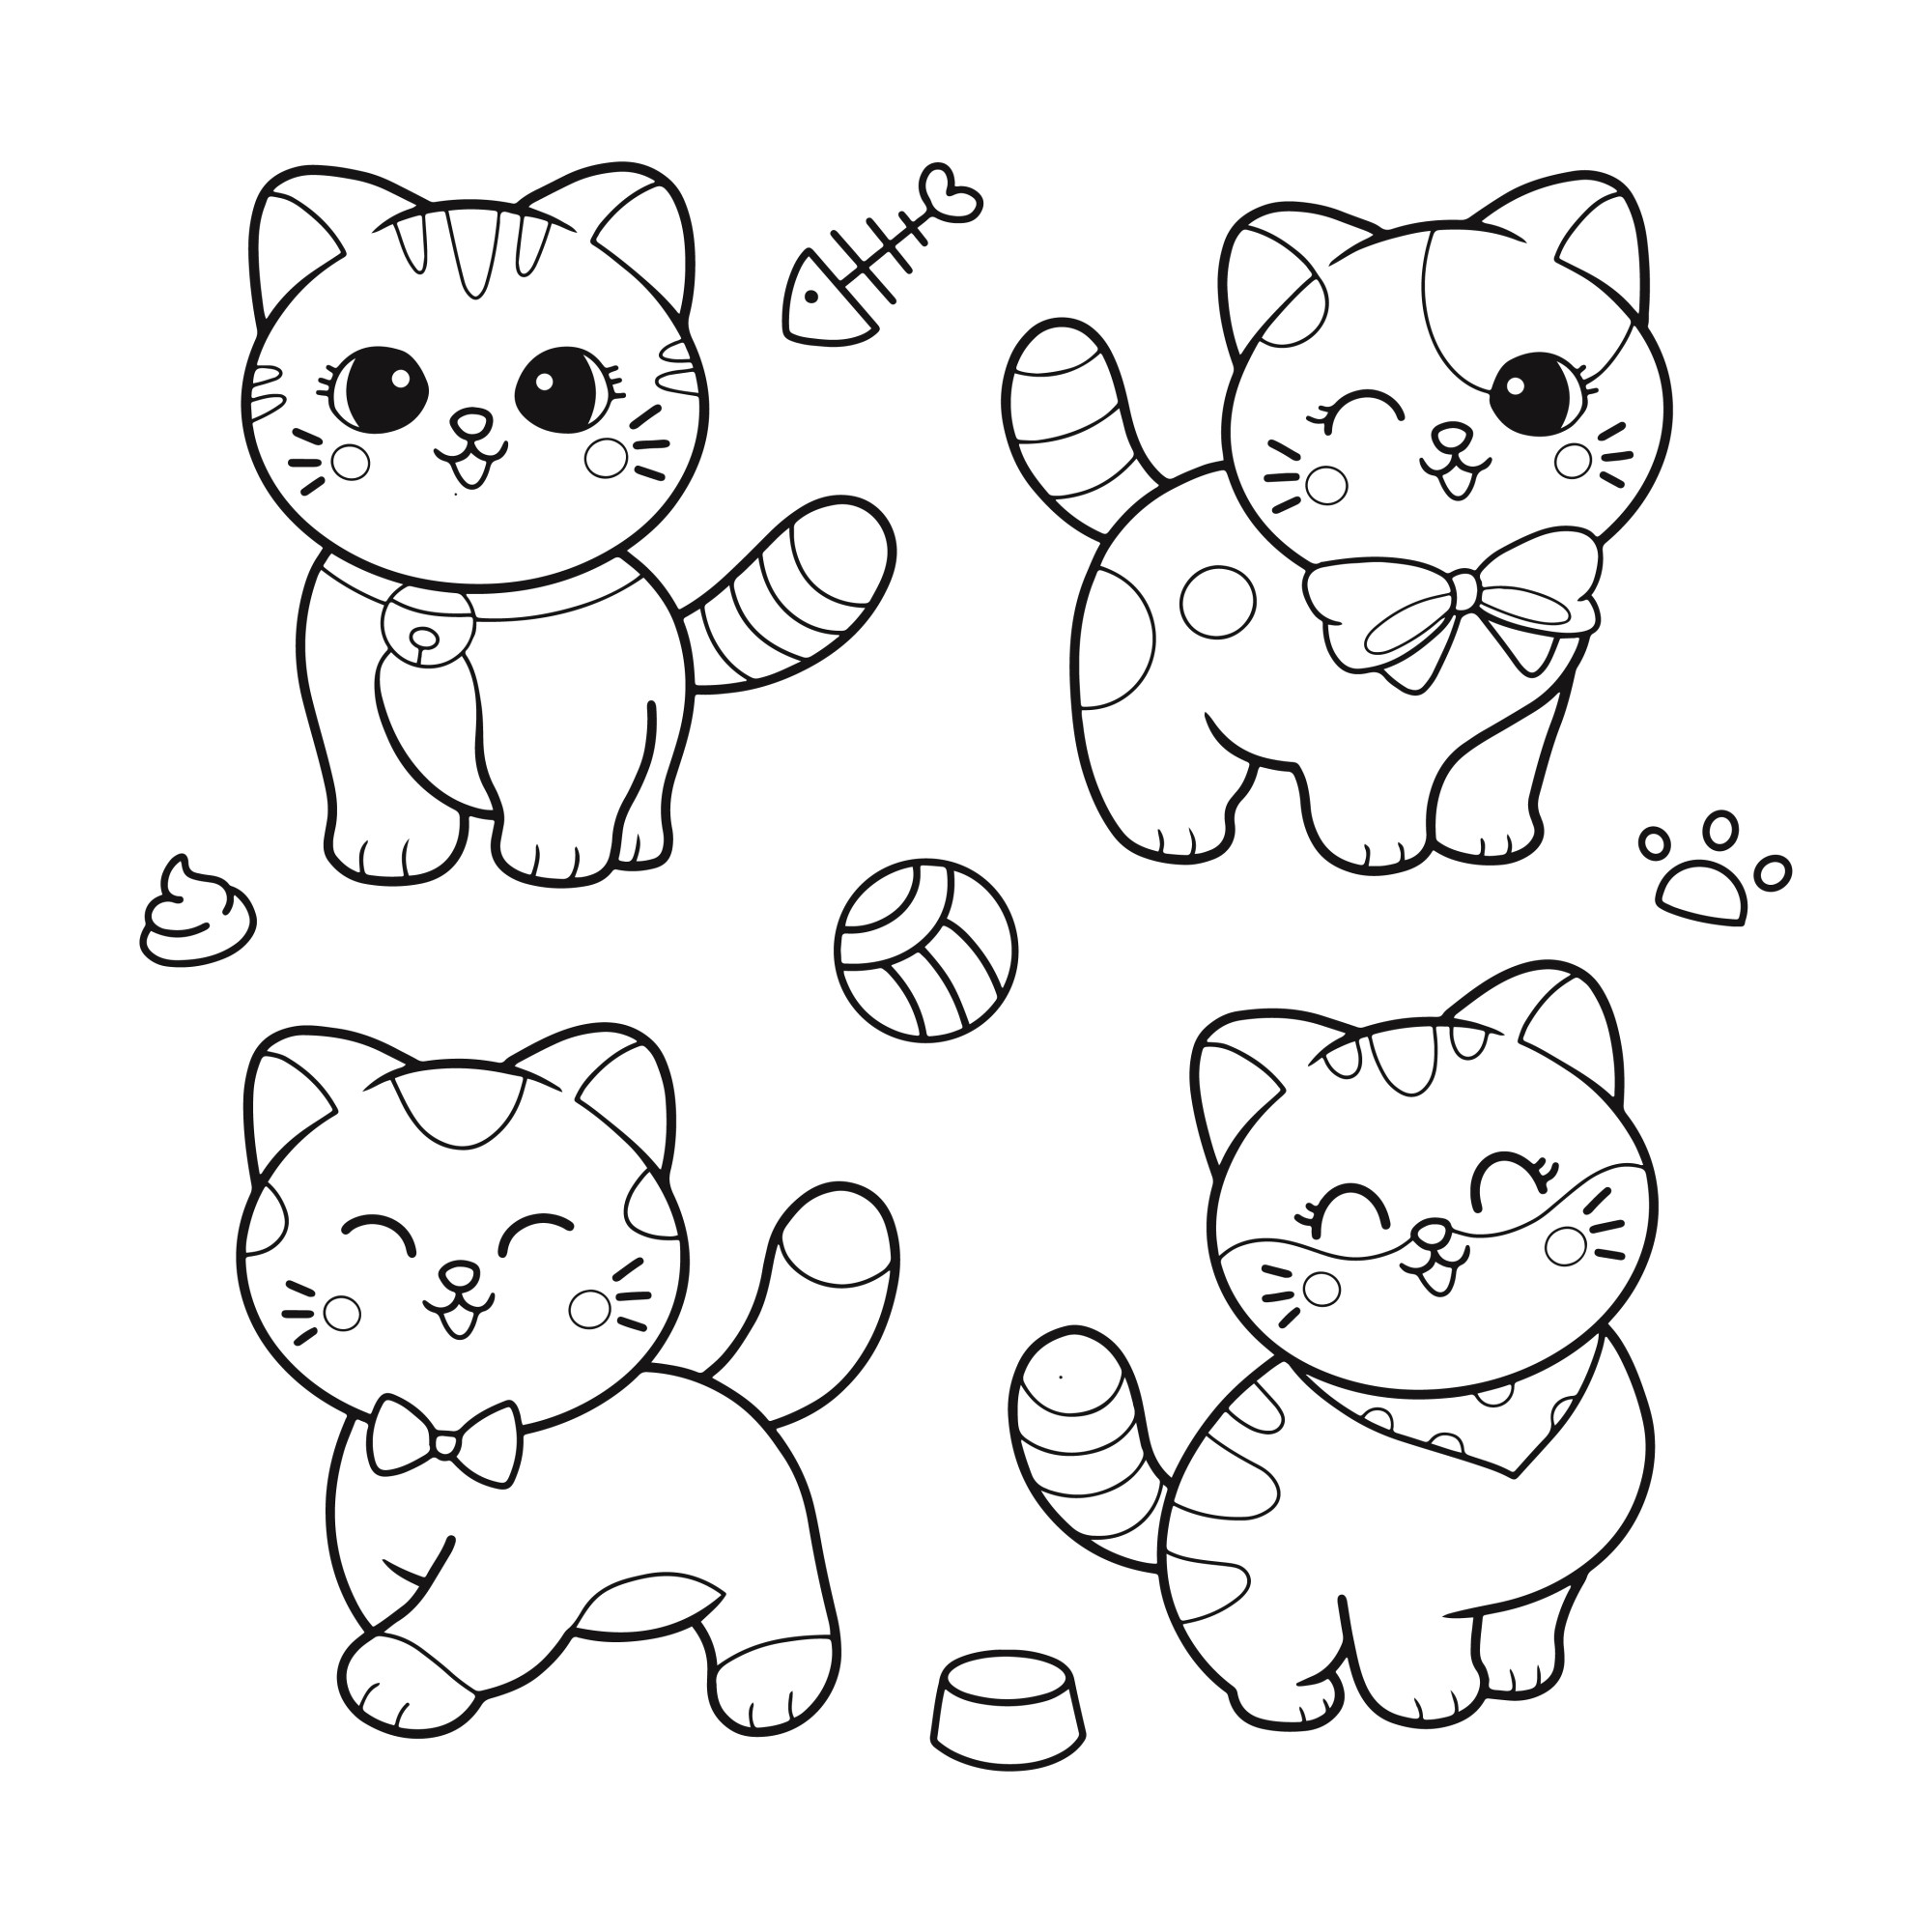 Раскраска для детей: милые котята